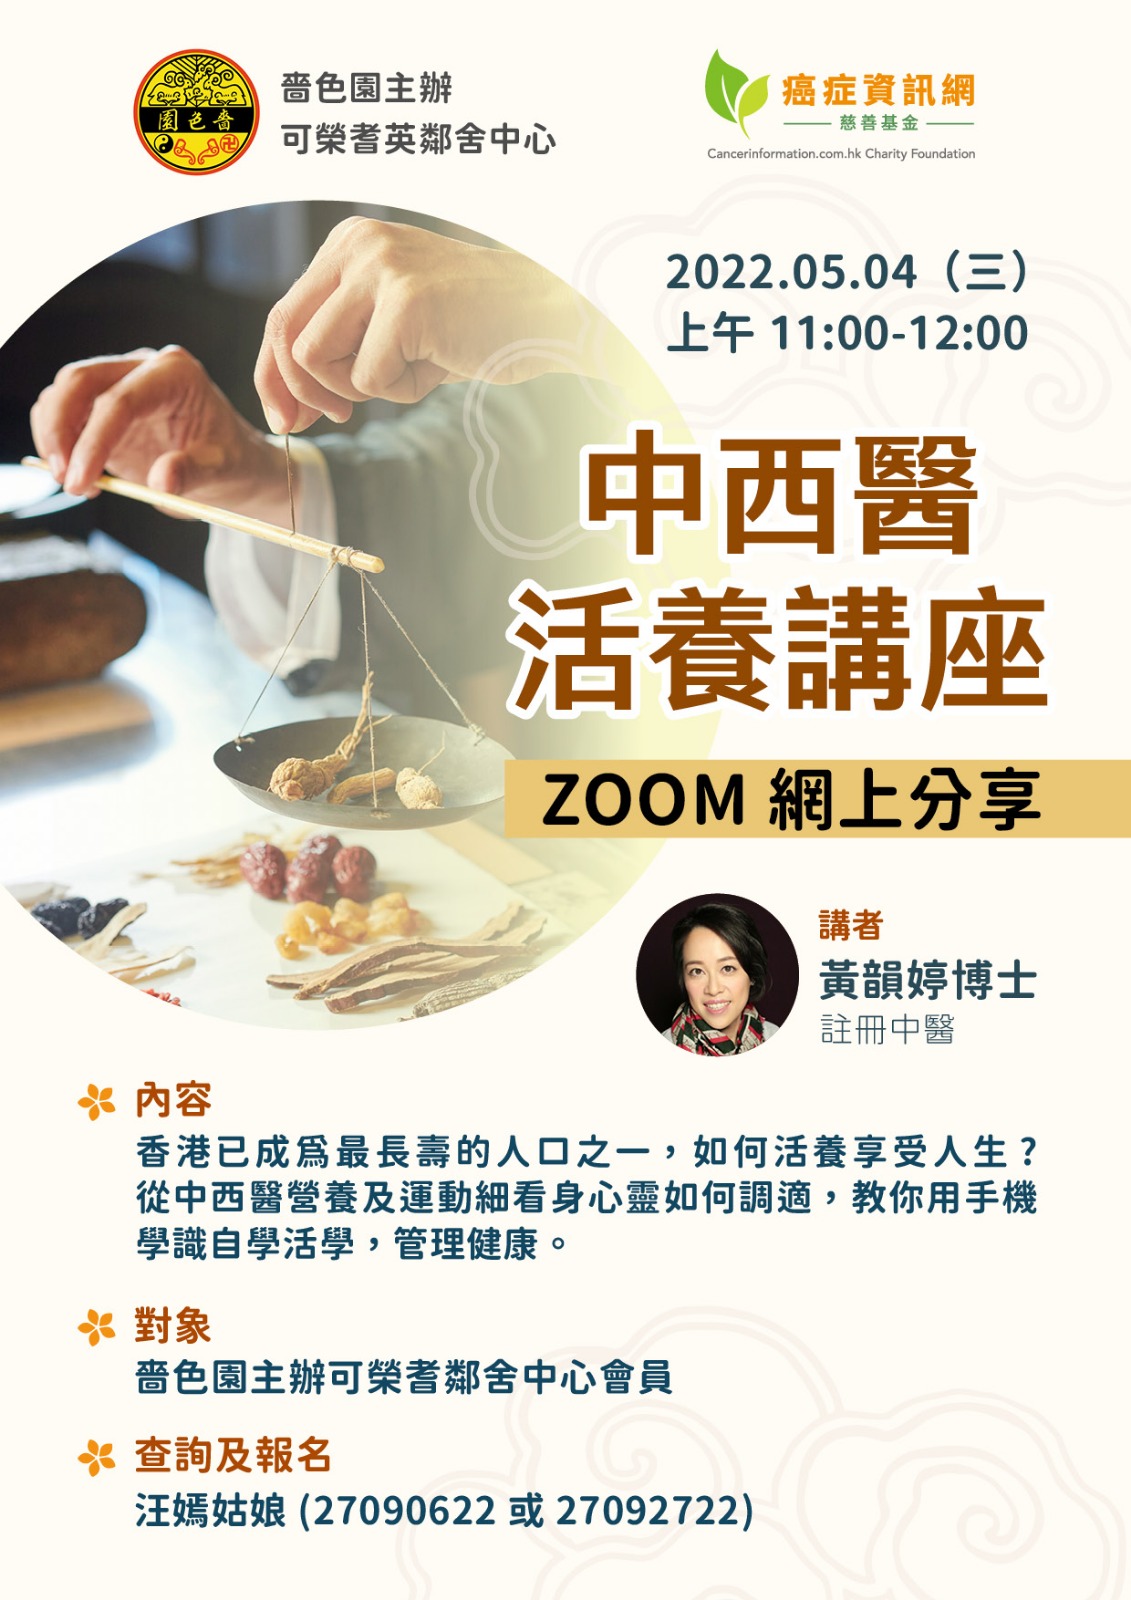 Zoom 網上分享- 中西醫活養講座位